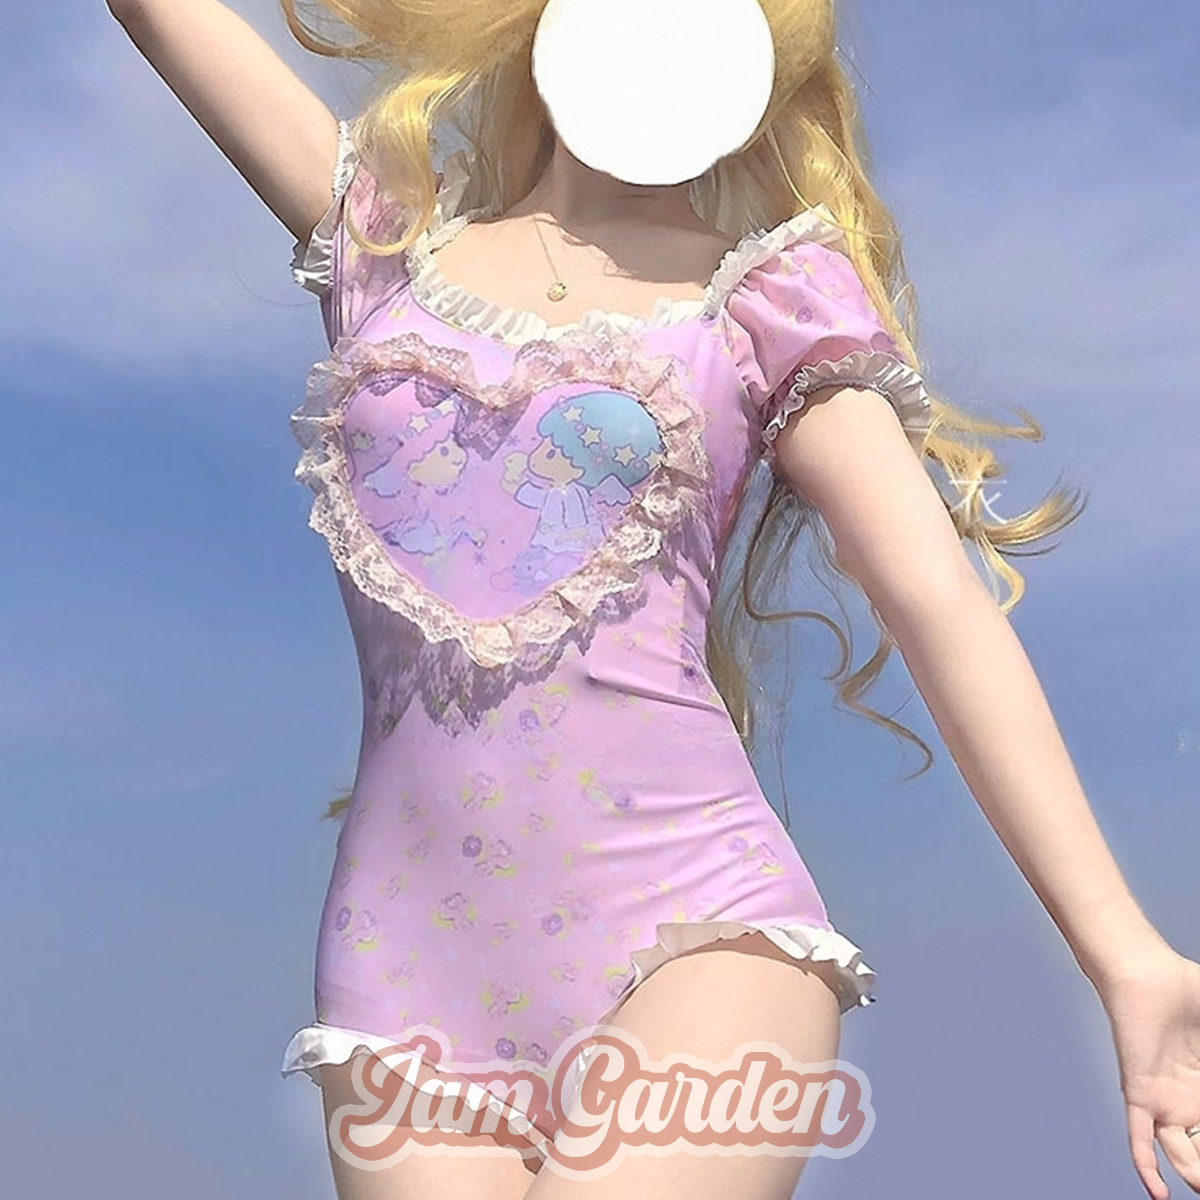 Cute Girl Gemini Short Sleeve One-Piece Swimsuit - Jam Garden